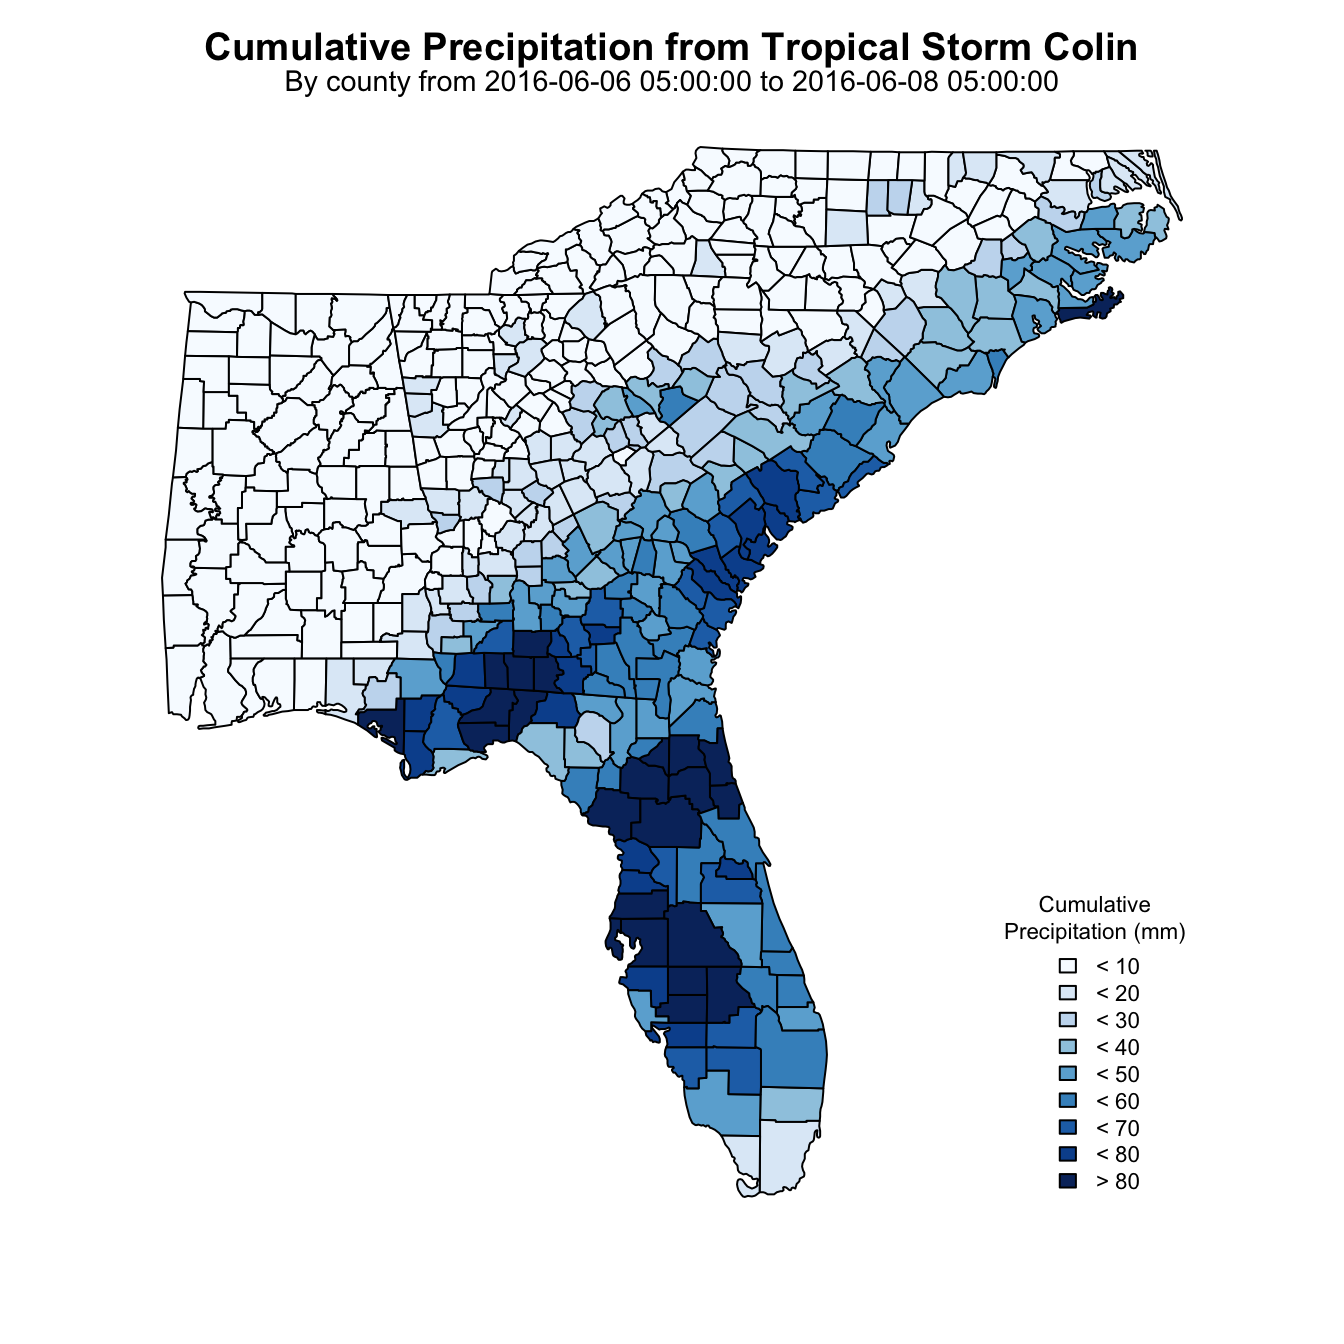 Visualizing Tropical Storm Colin Precipitation using geoknife